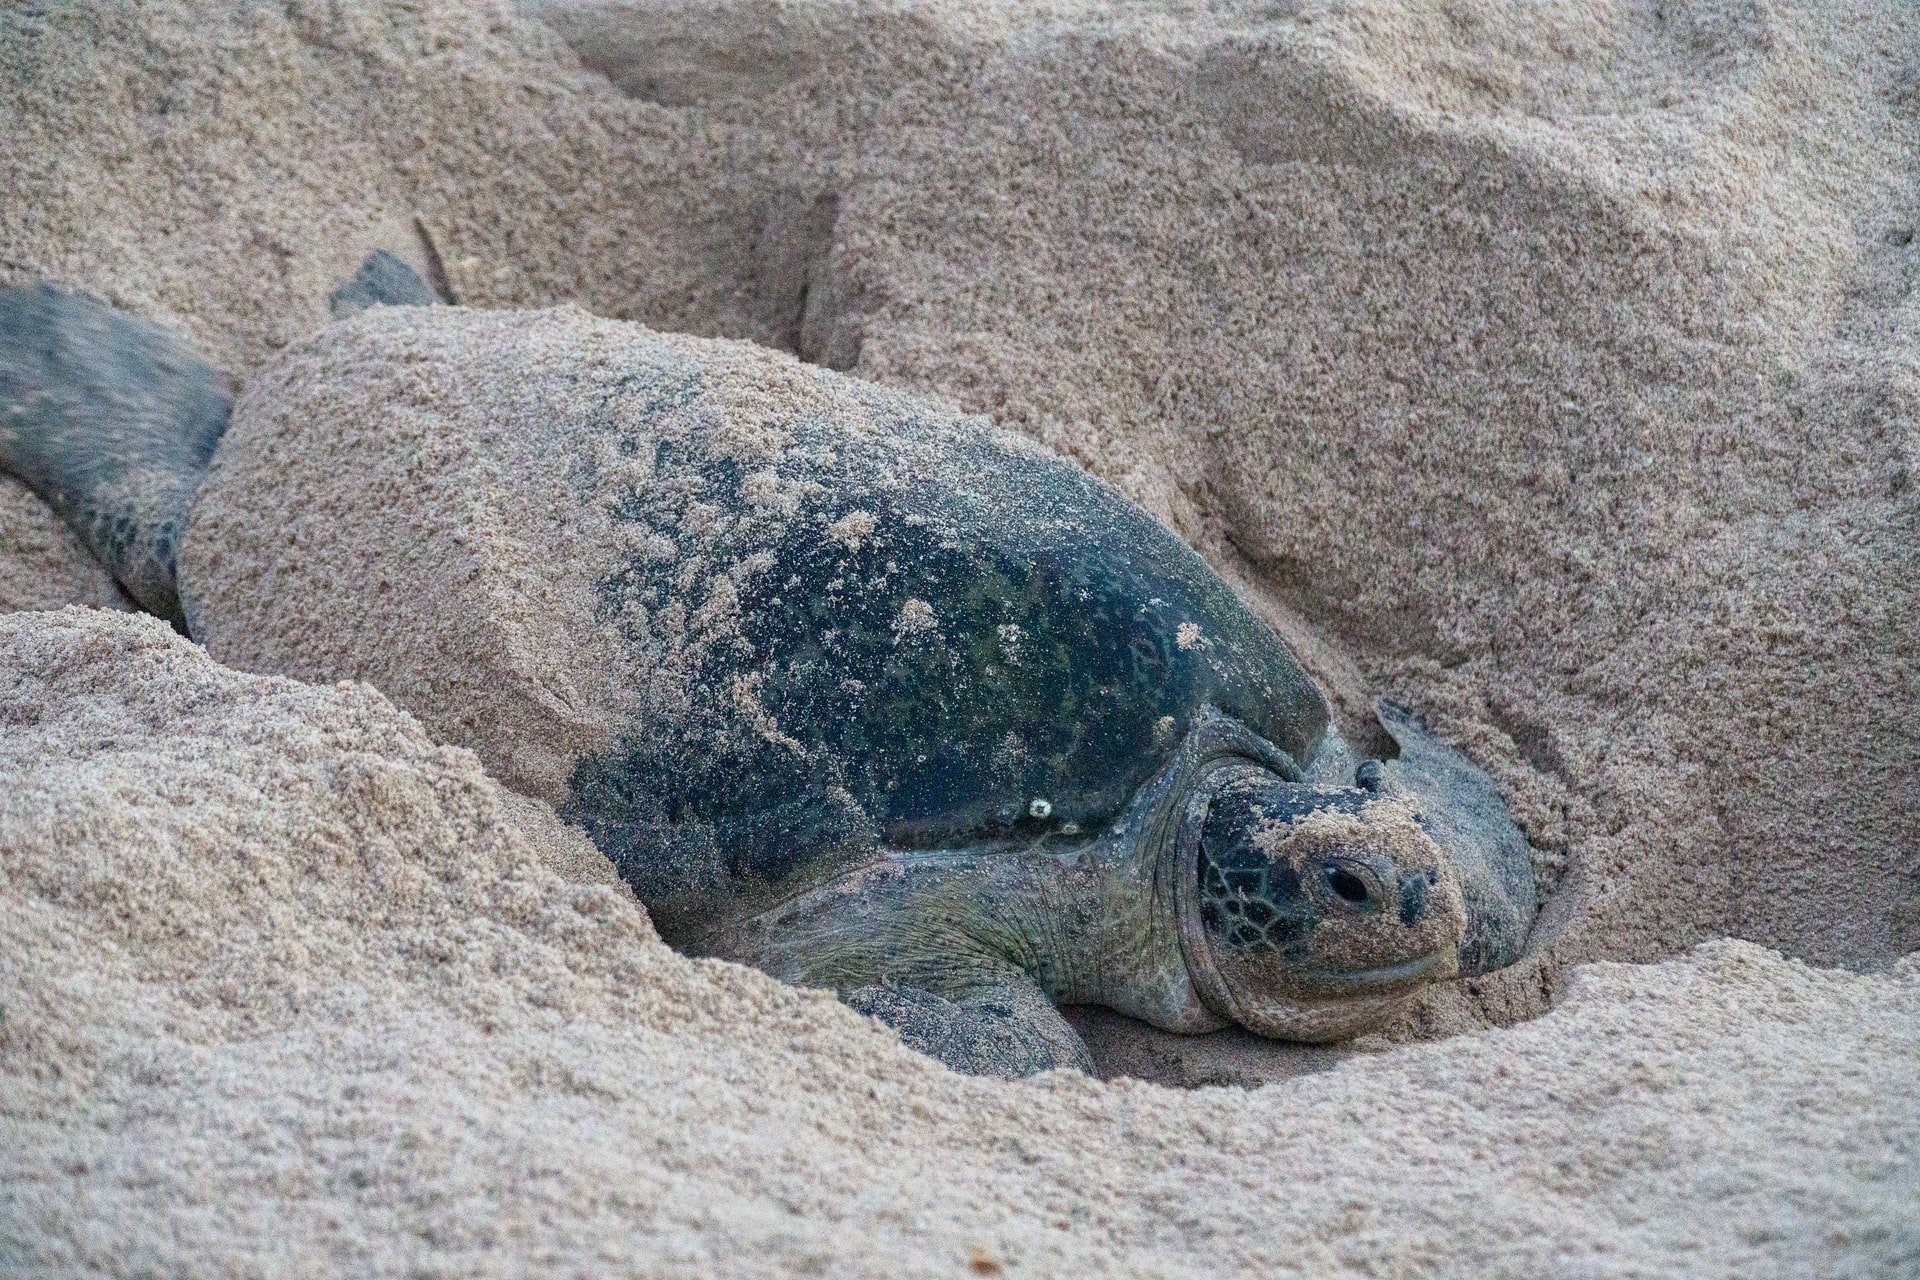 Tartarugas sempre voltam à praia onde deixaram seus ovos, graças ao magnetismo (Fonte: Unsplash)